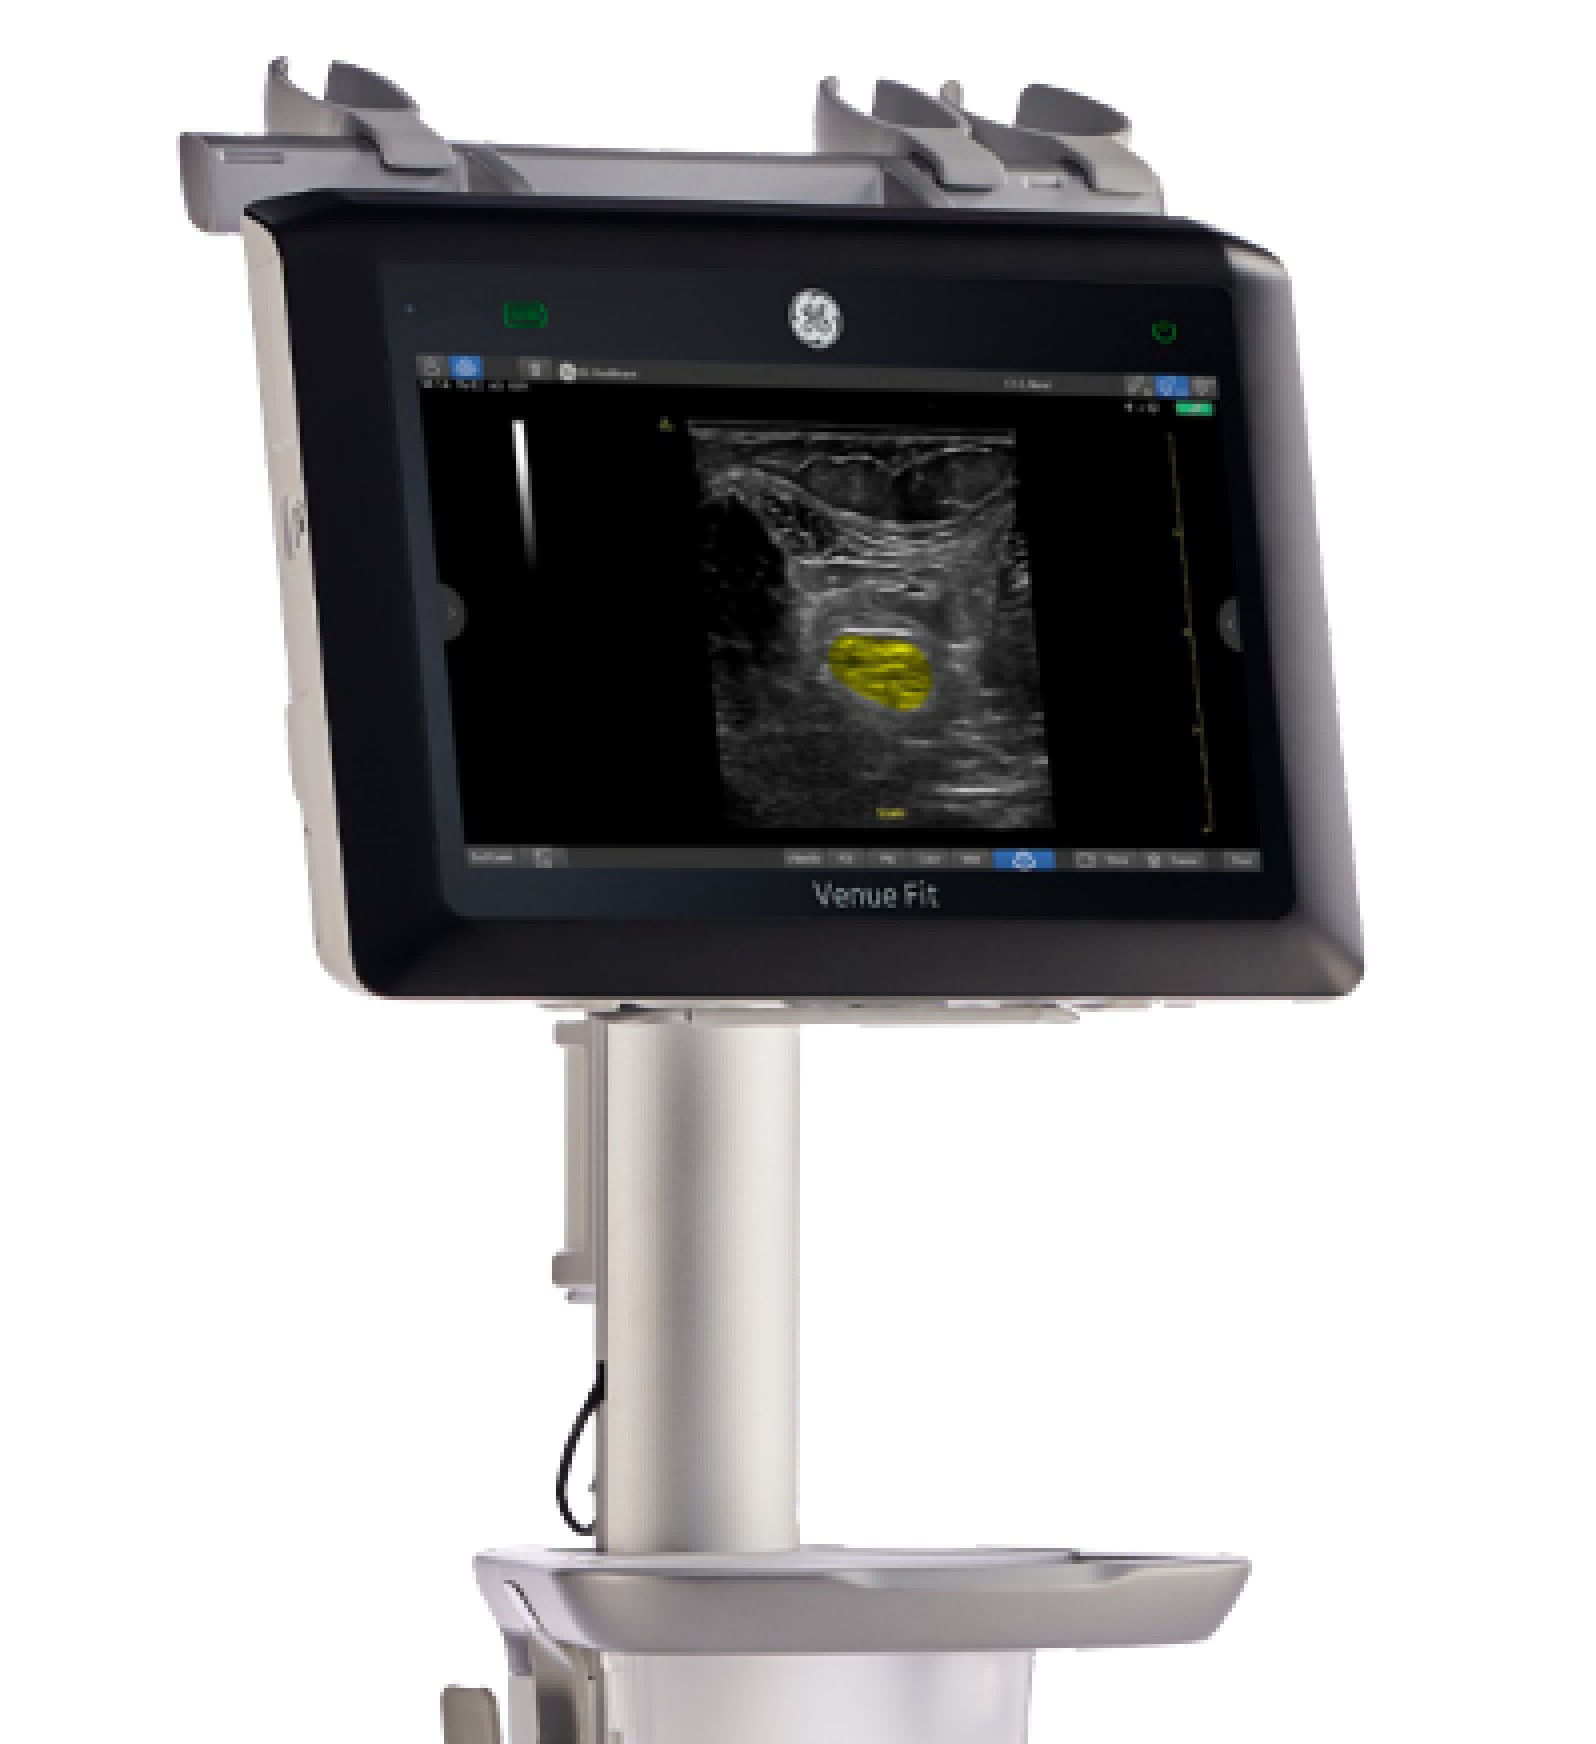 ge-venue-fit-ultrasound-system-for-sale